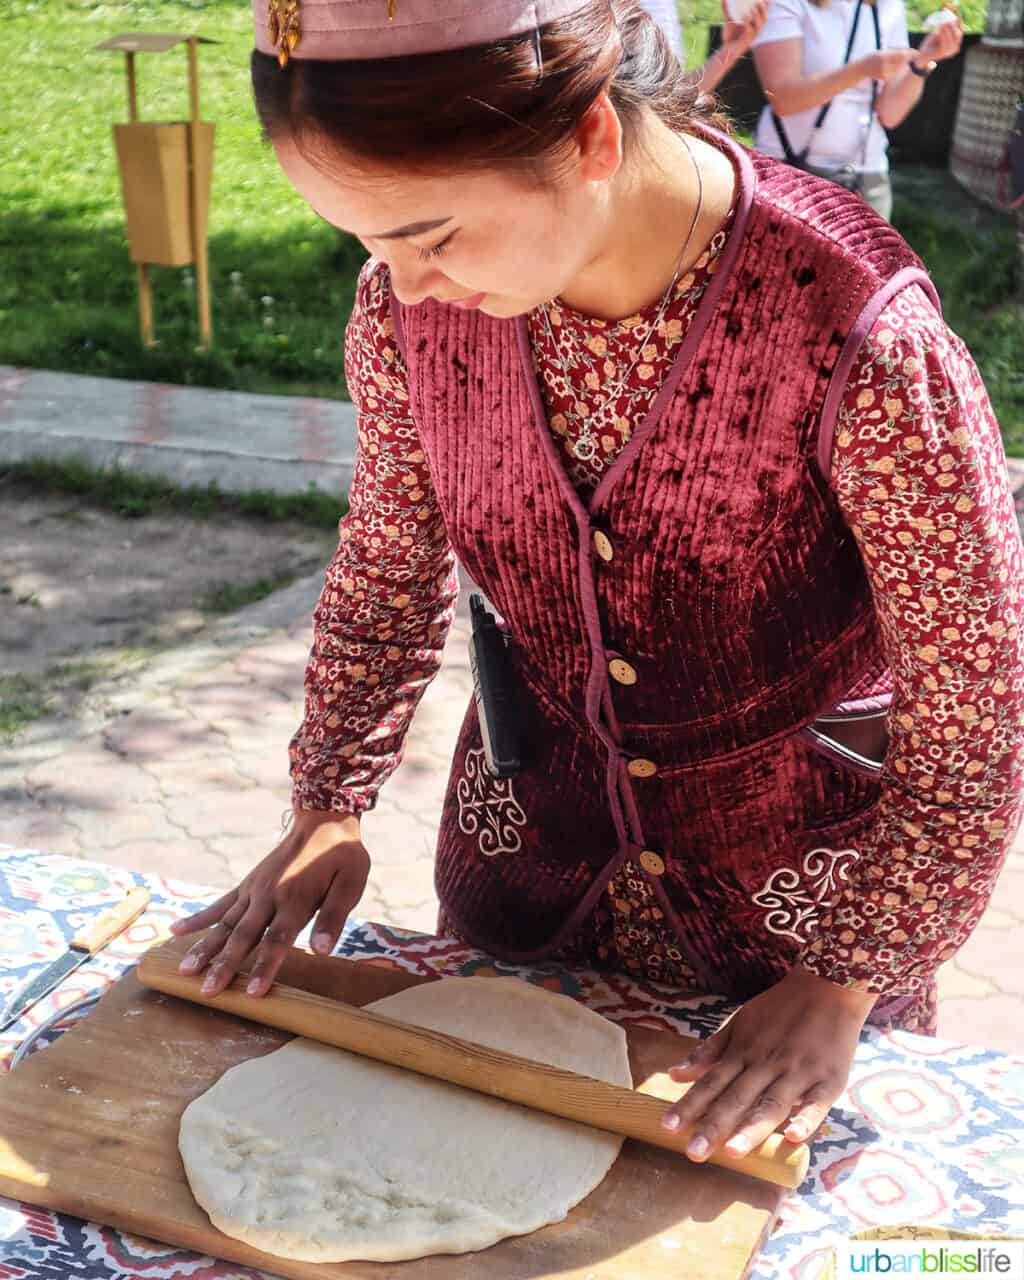 Woman rolling out dough to make baursak at Ethno Village of the Huns near Almaty, Kazakhstan.